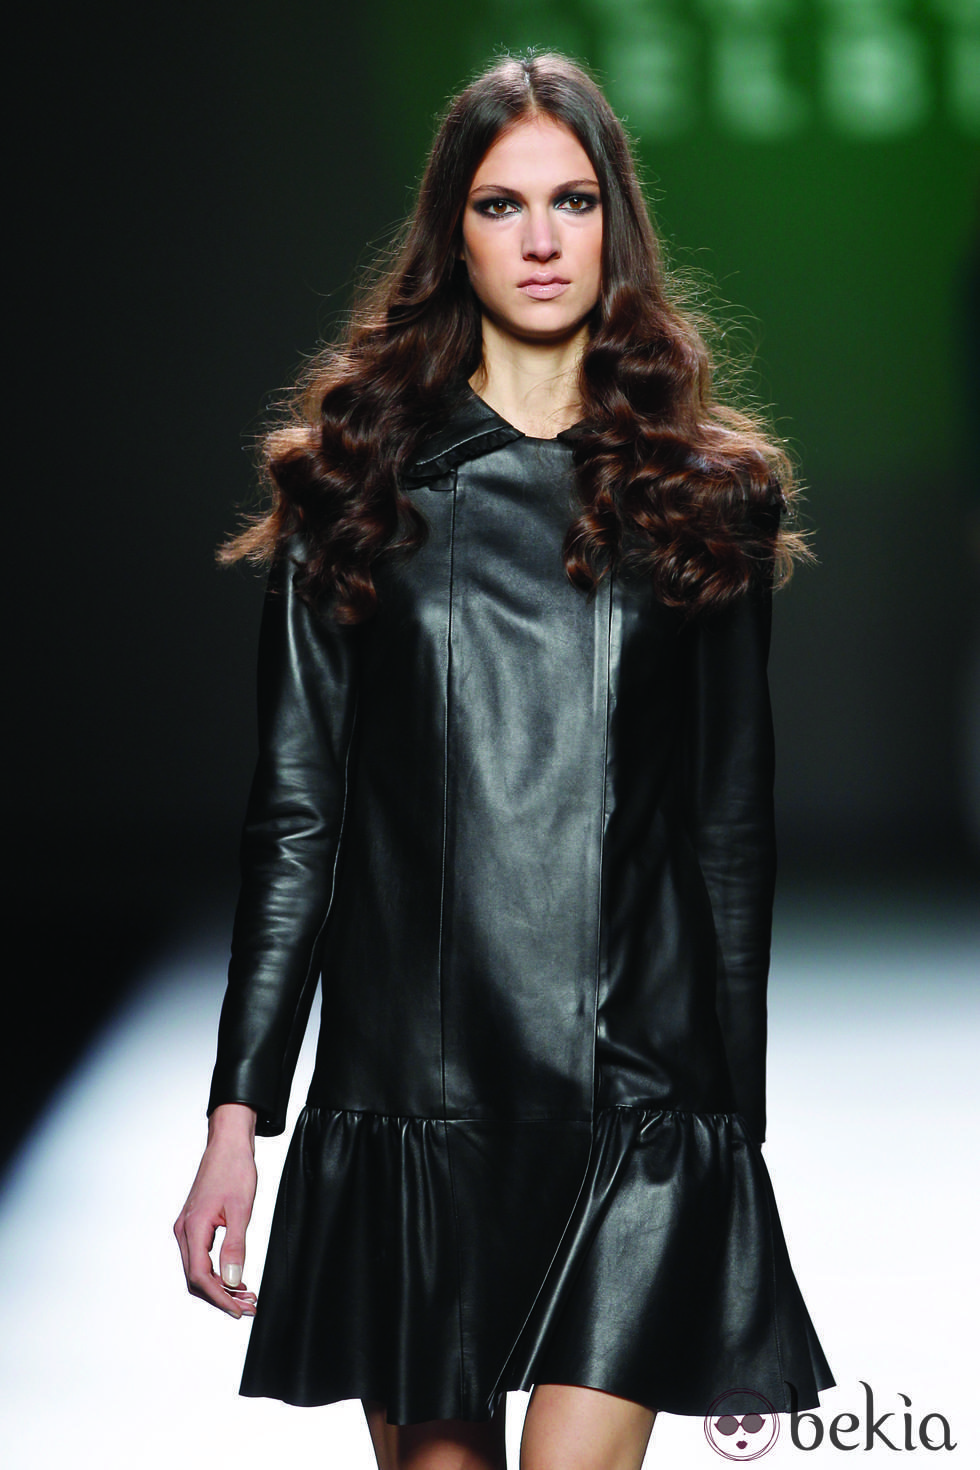 Vestido de cuero negro de la colección otoño/invierno 2012/2013 de Teresa Helbig